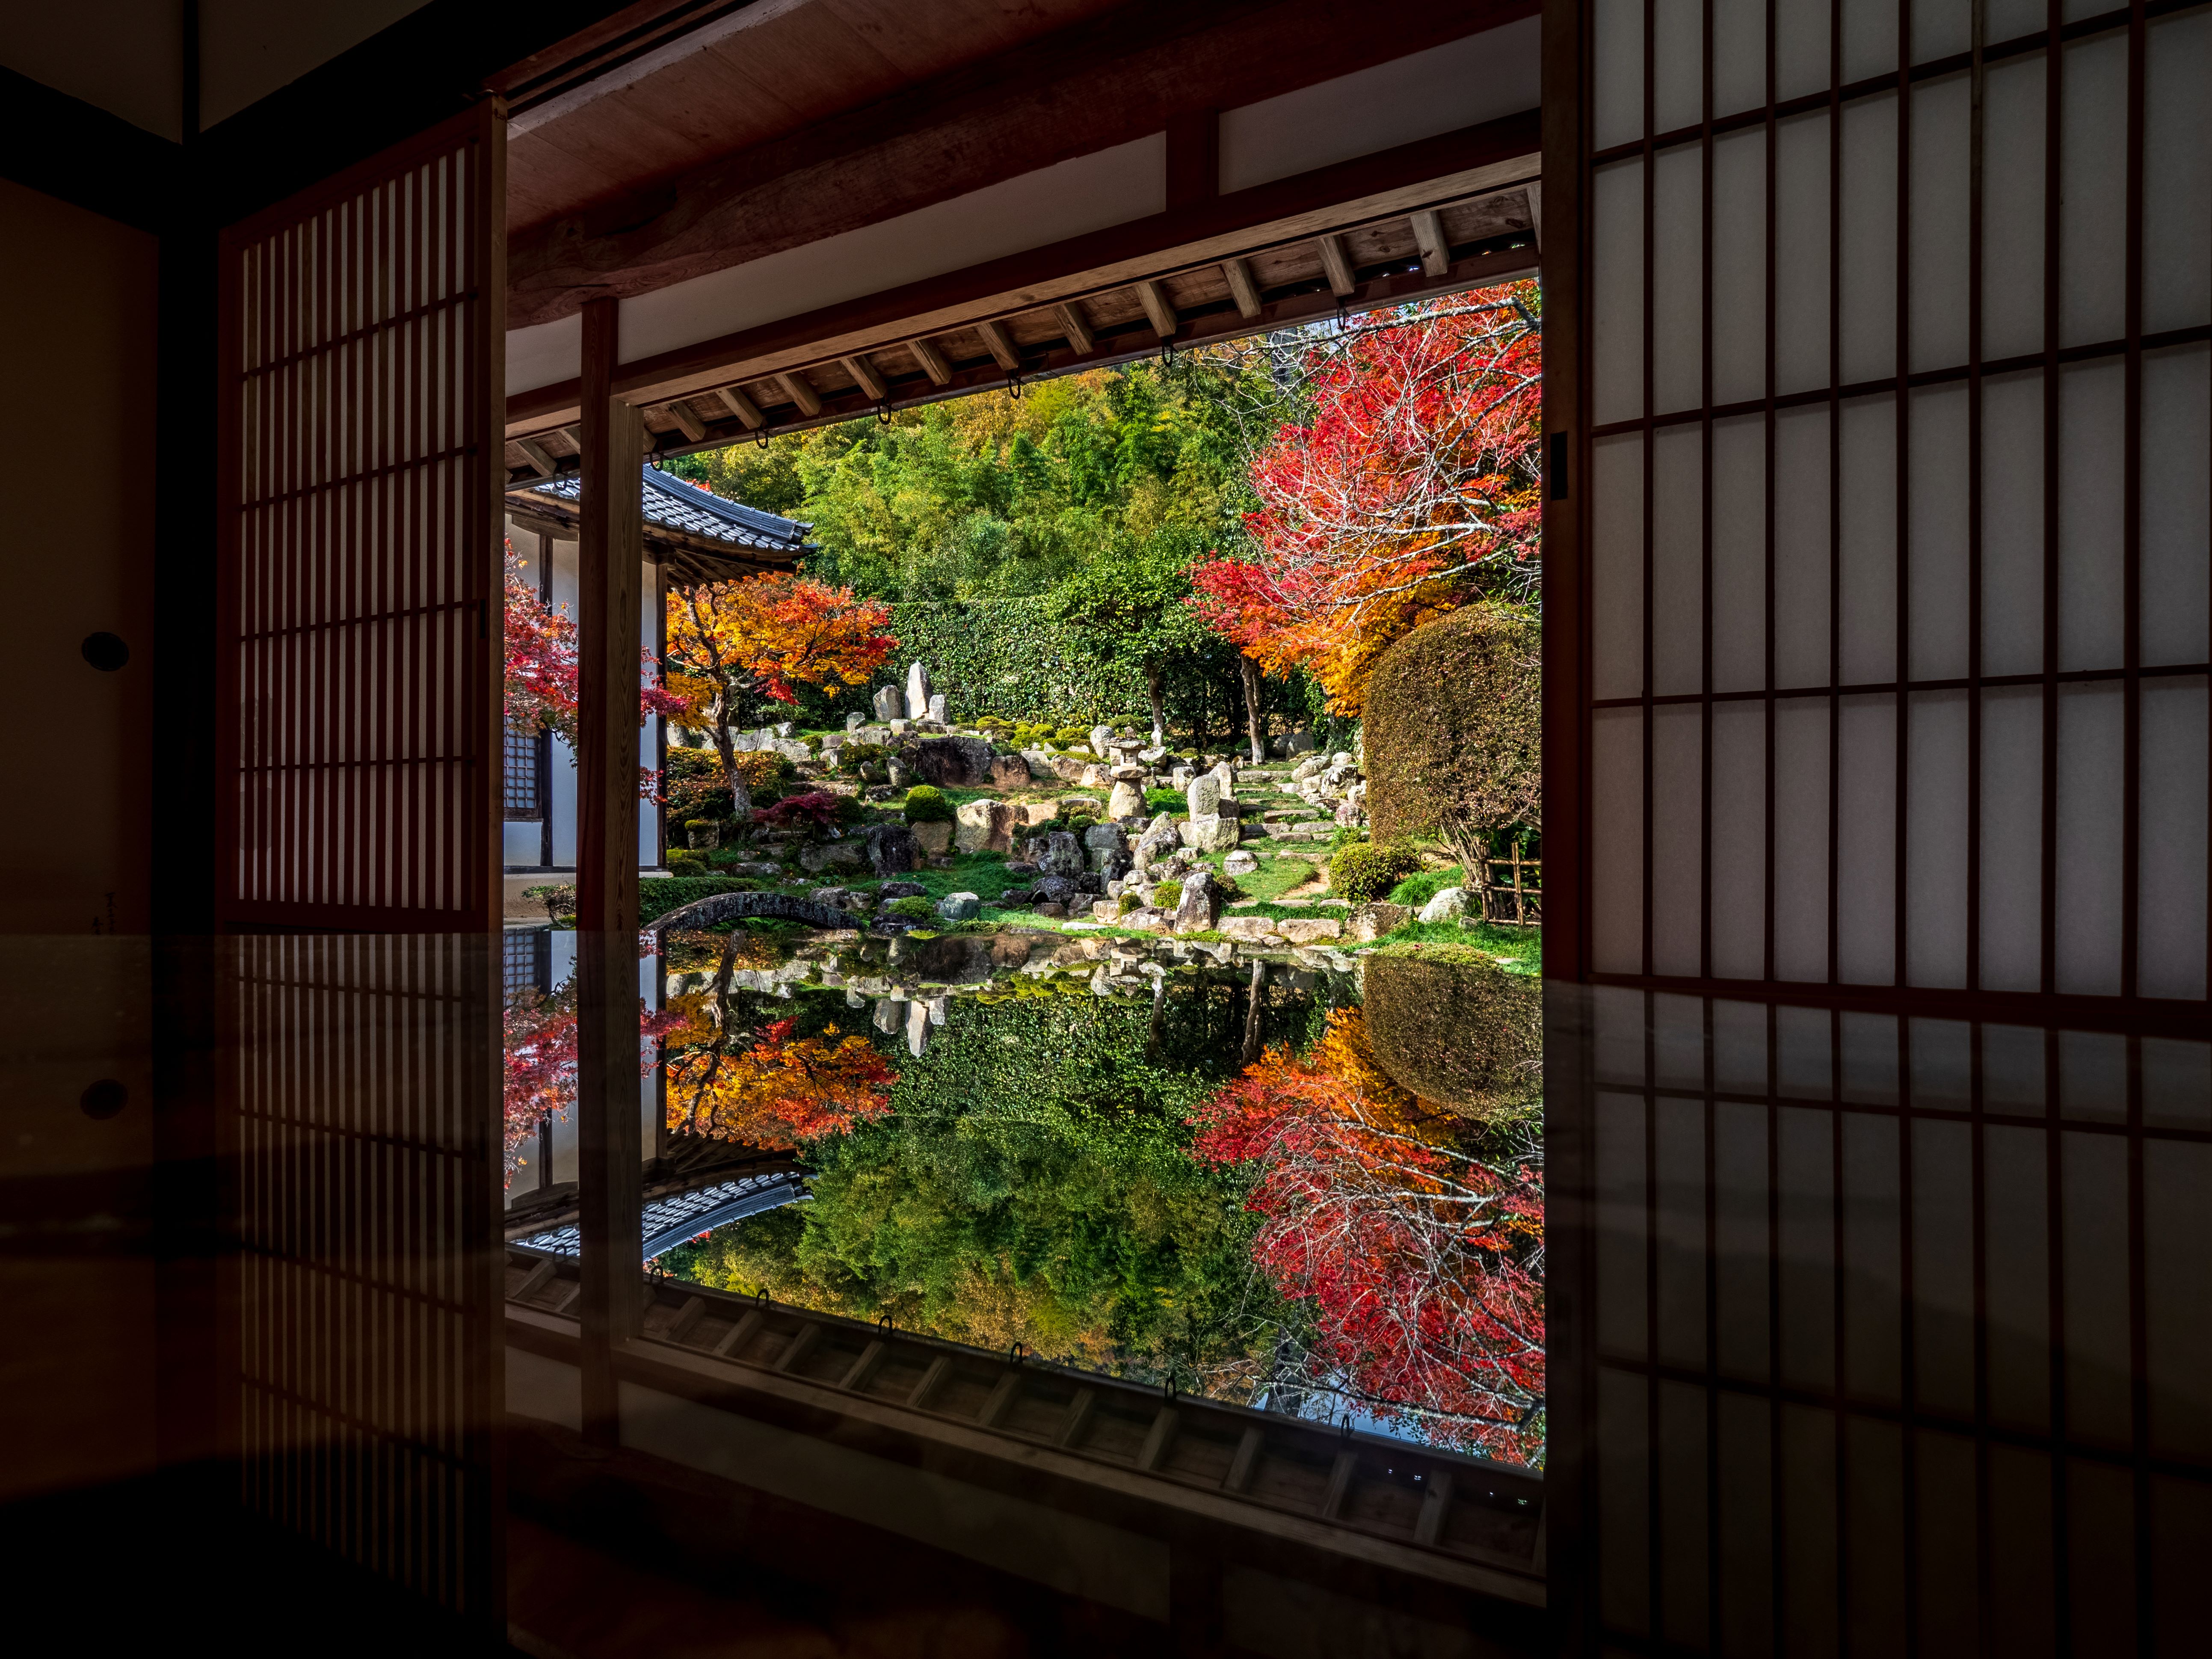 大通寺の庭園は別名「石寿園」とも呼ばれ矢掛の庭師が江戸時代後期に21年間という月日をかけて築いた名園